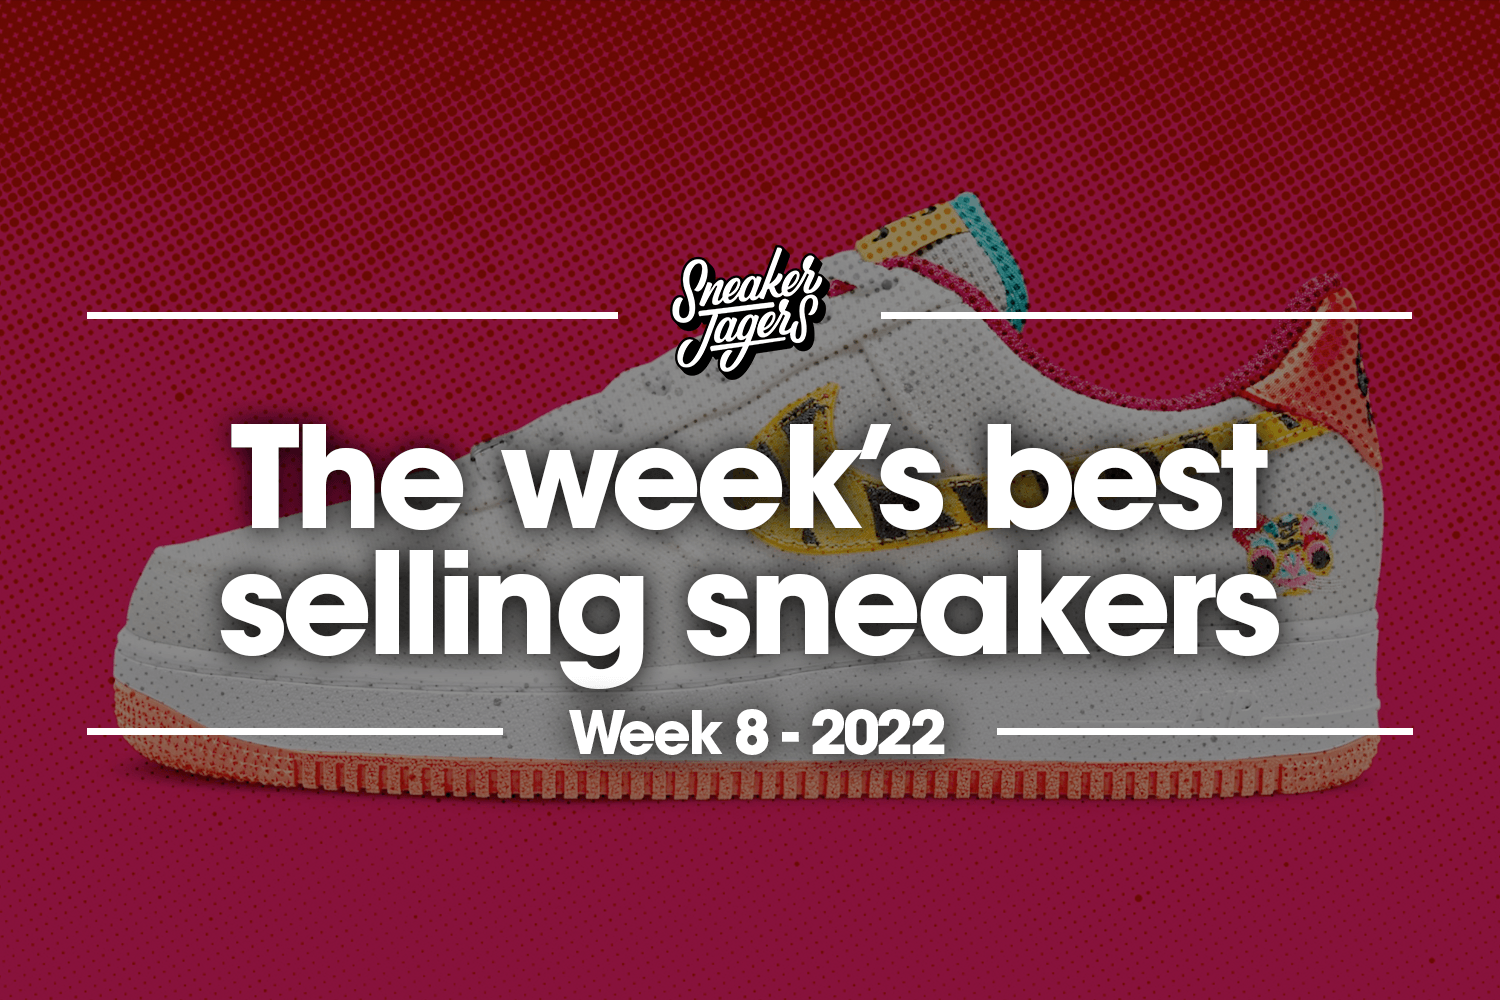 The 5 best-selling sneakers of week 8